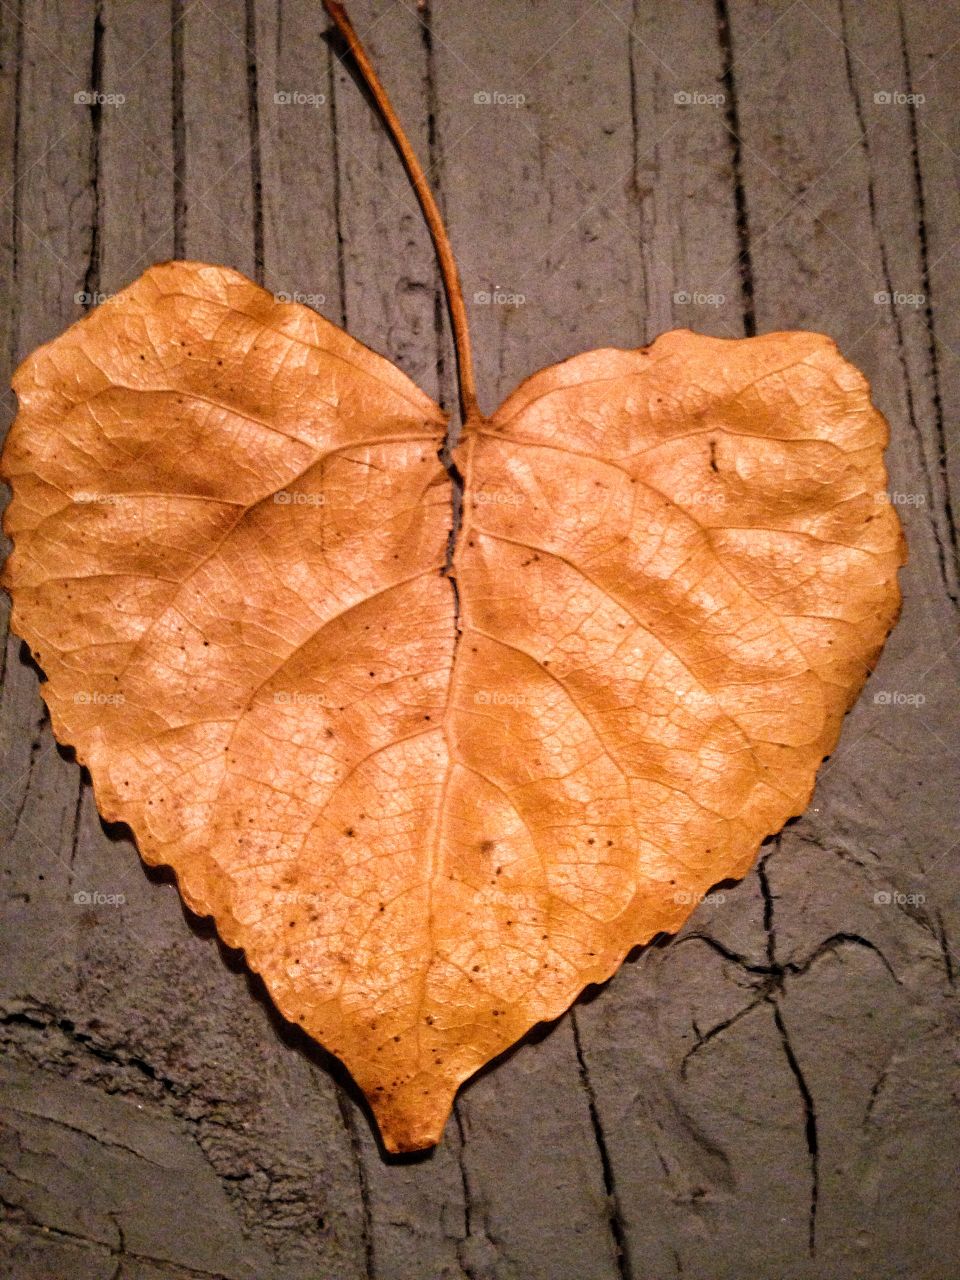 Leaf heart